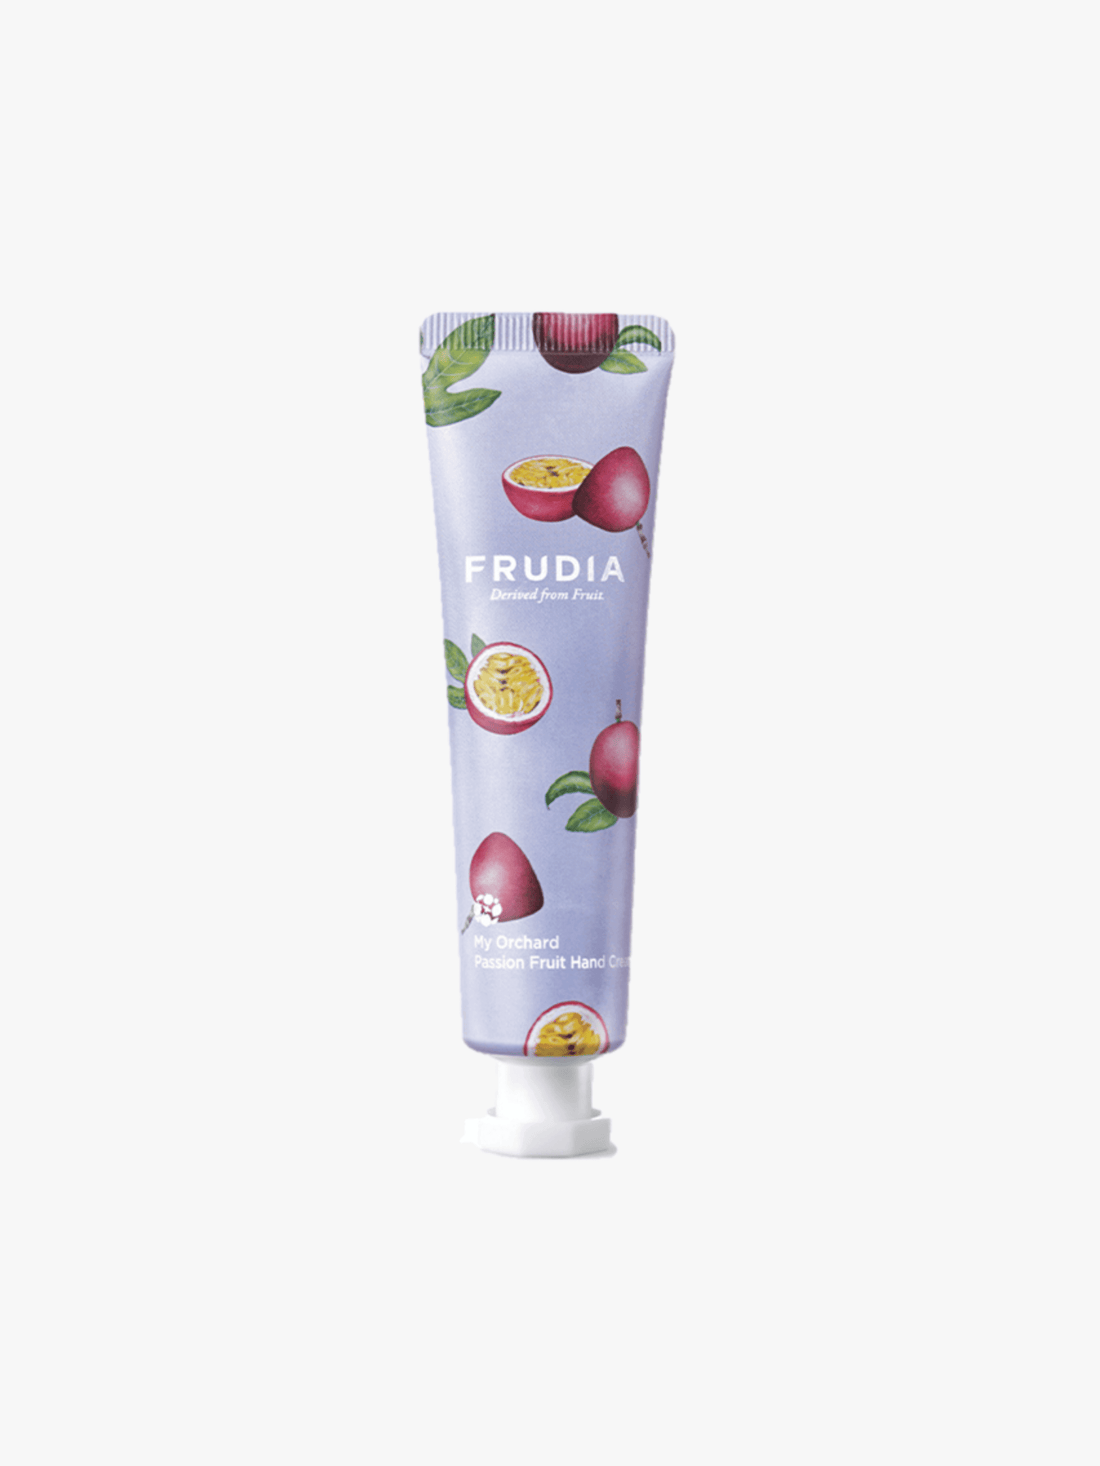 Frudia - Crèmes pour les mains - My Orchard Hand Cream Passion fruit